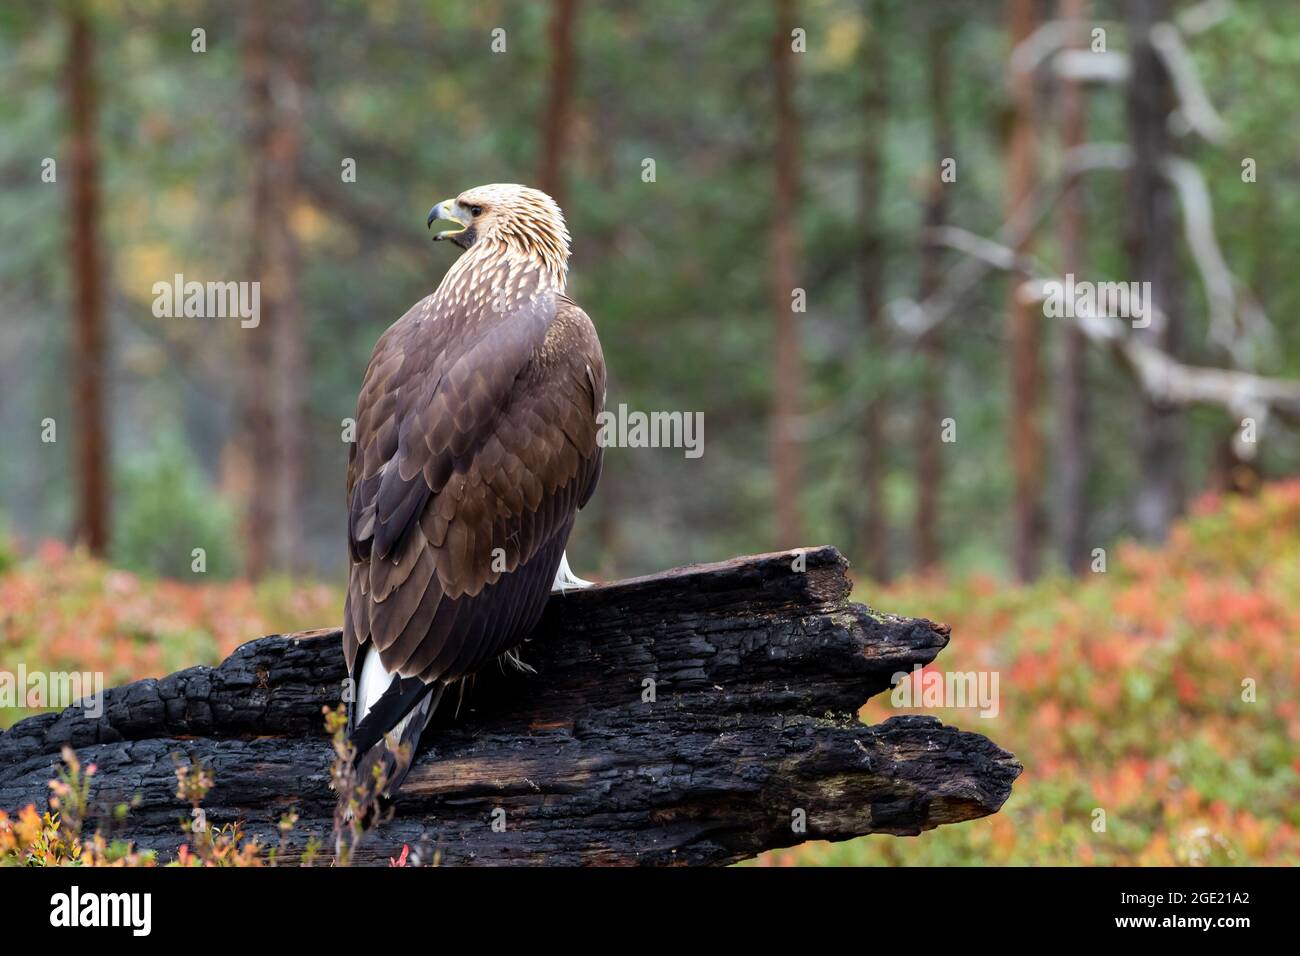 Der junge Greifvogelgrab Goldener Adler, Aquila chrysaetos, thronte während der Herbstfärbung im finnischen Taiga-Wald in Nordeuropa auf einem verbrannten Baumstamm Stockfoto